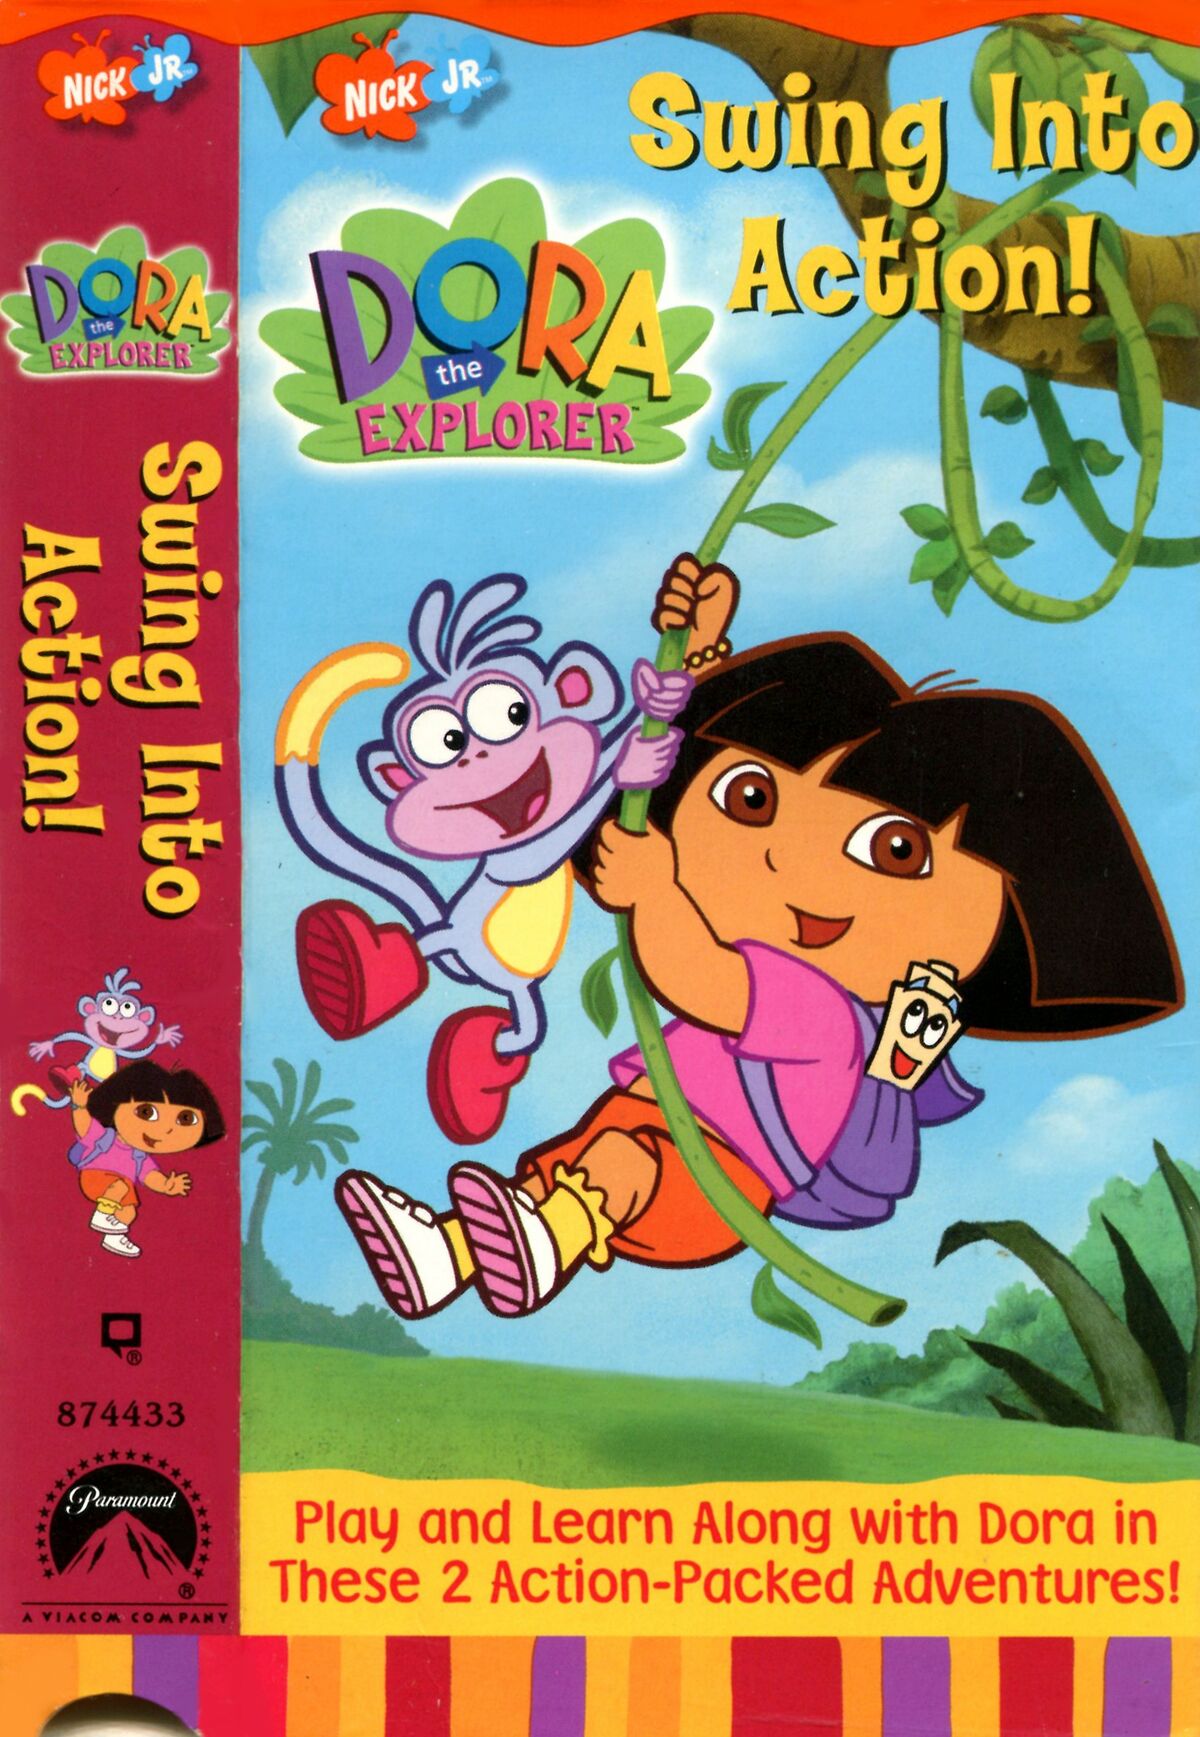 Dora the Explorer/Home media, Moviepedia